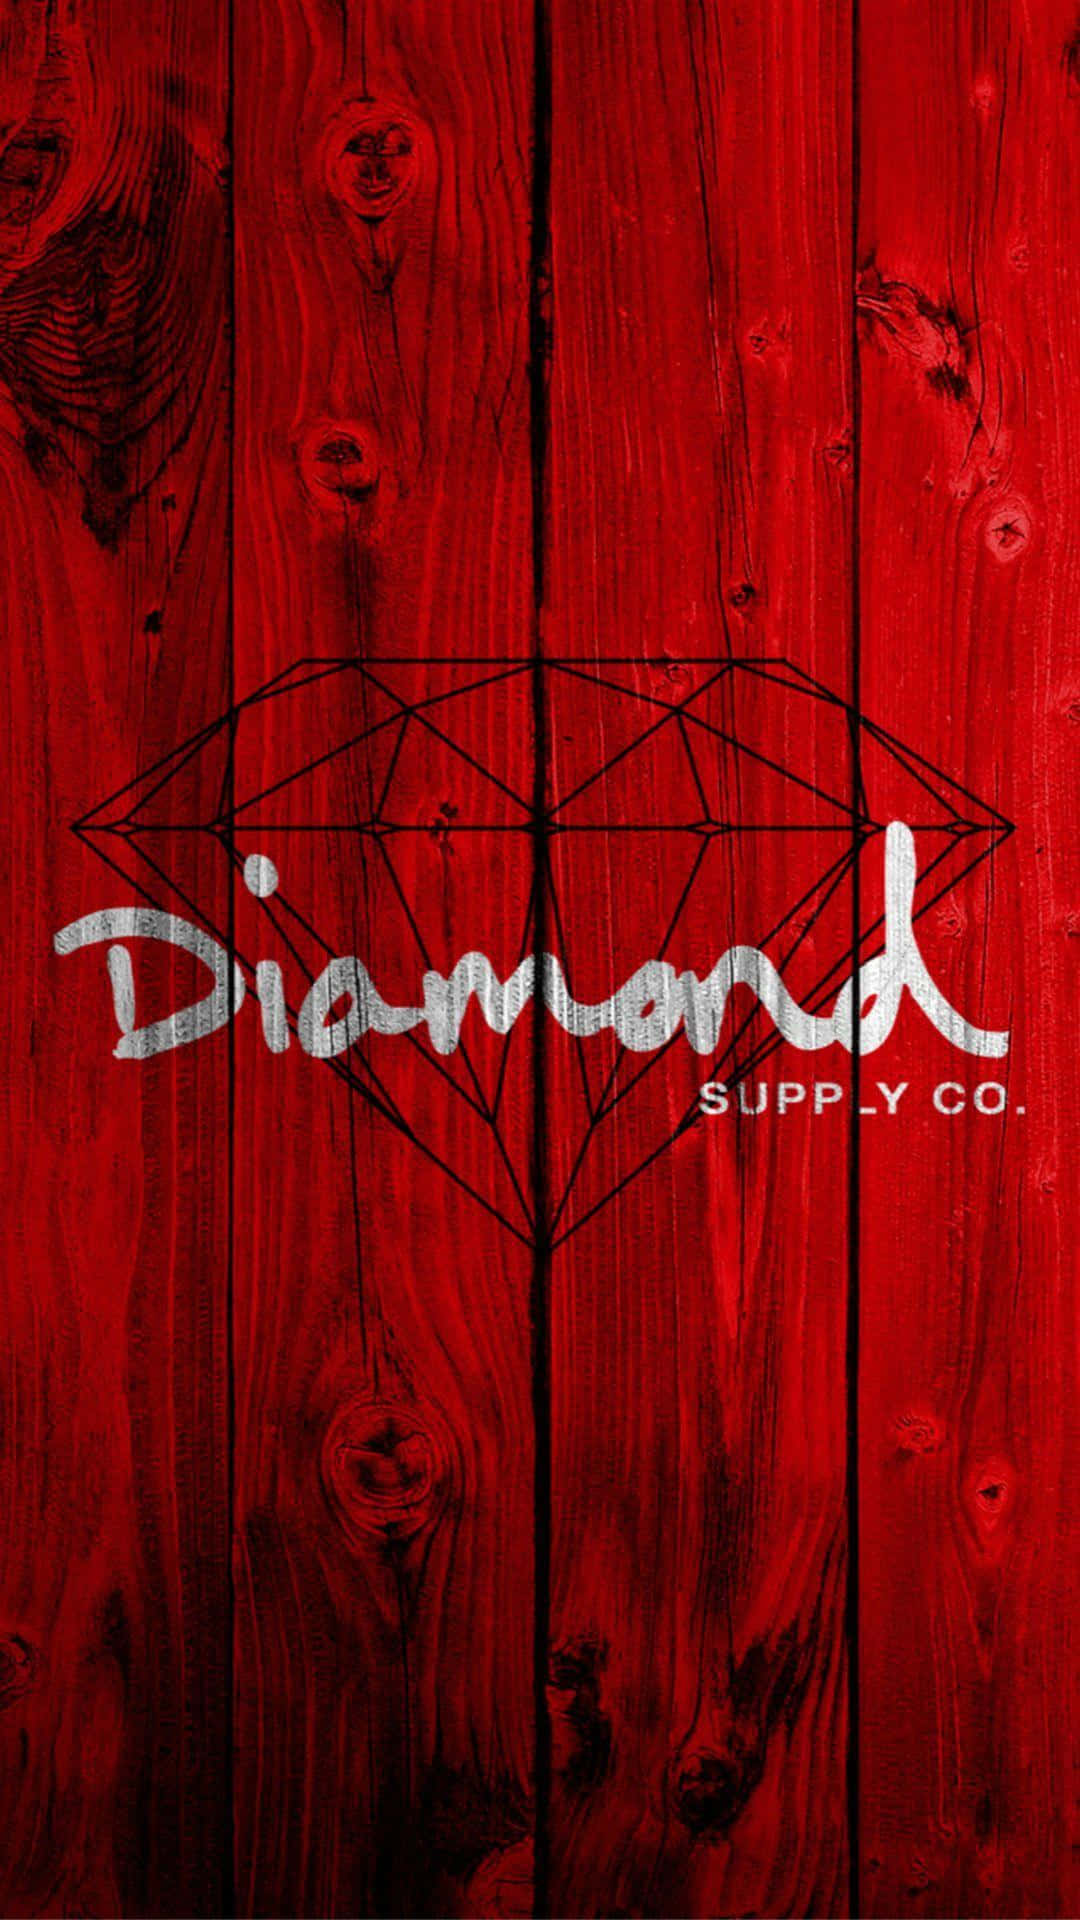 Papelde Parede Do Diamond Supply Co Com O Logotipo Em Vermelho Na Madeira. Papel de Parede